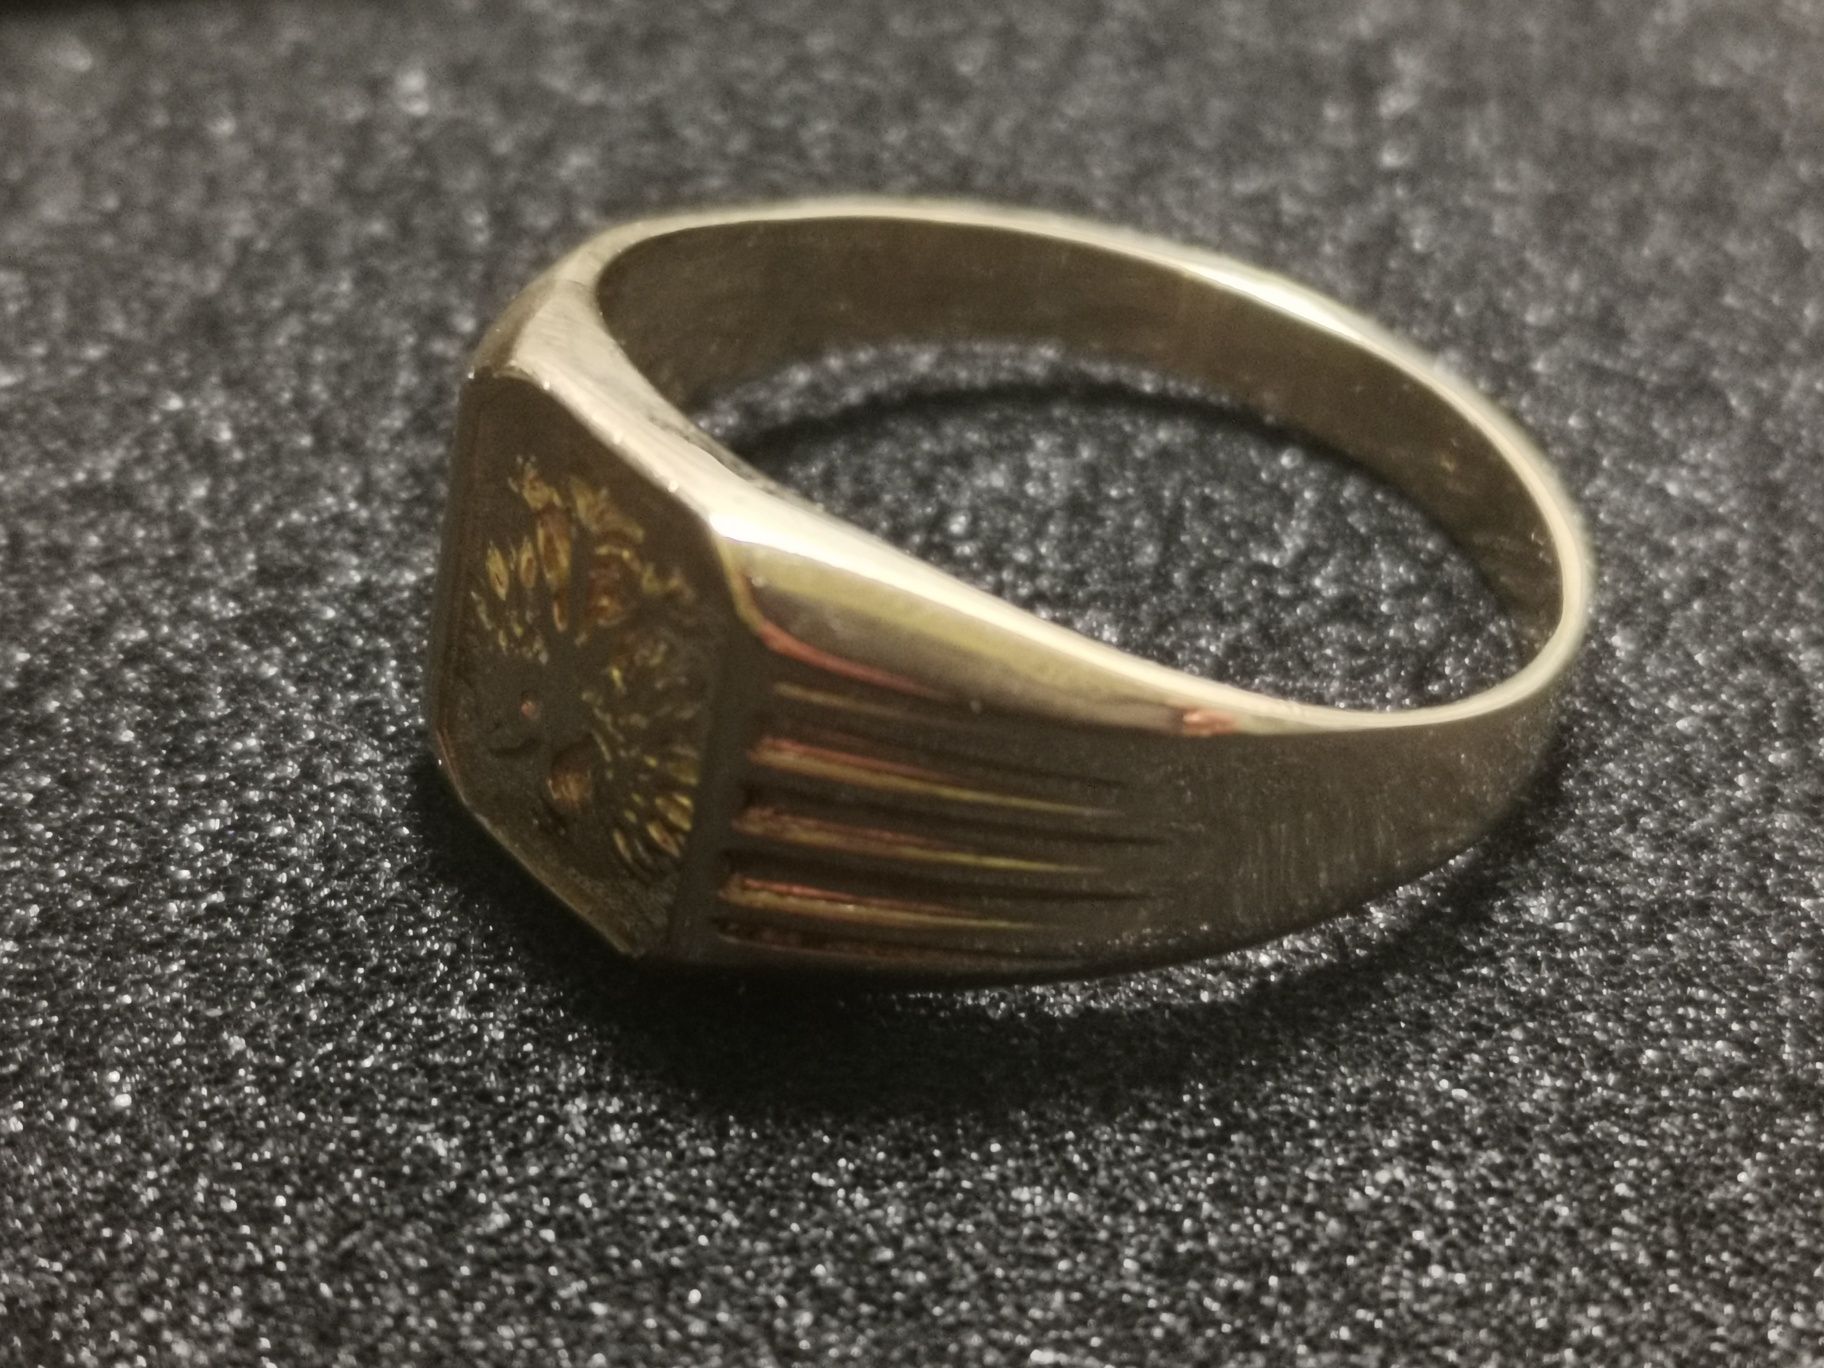 piękny polski sygnet patriotyczny, złoto 585, pierścień z orłem w koro